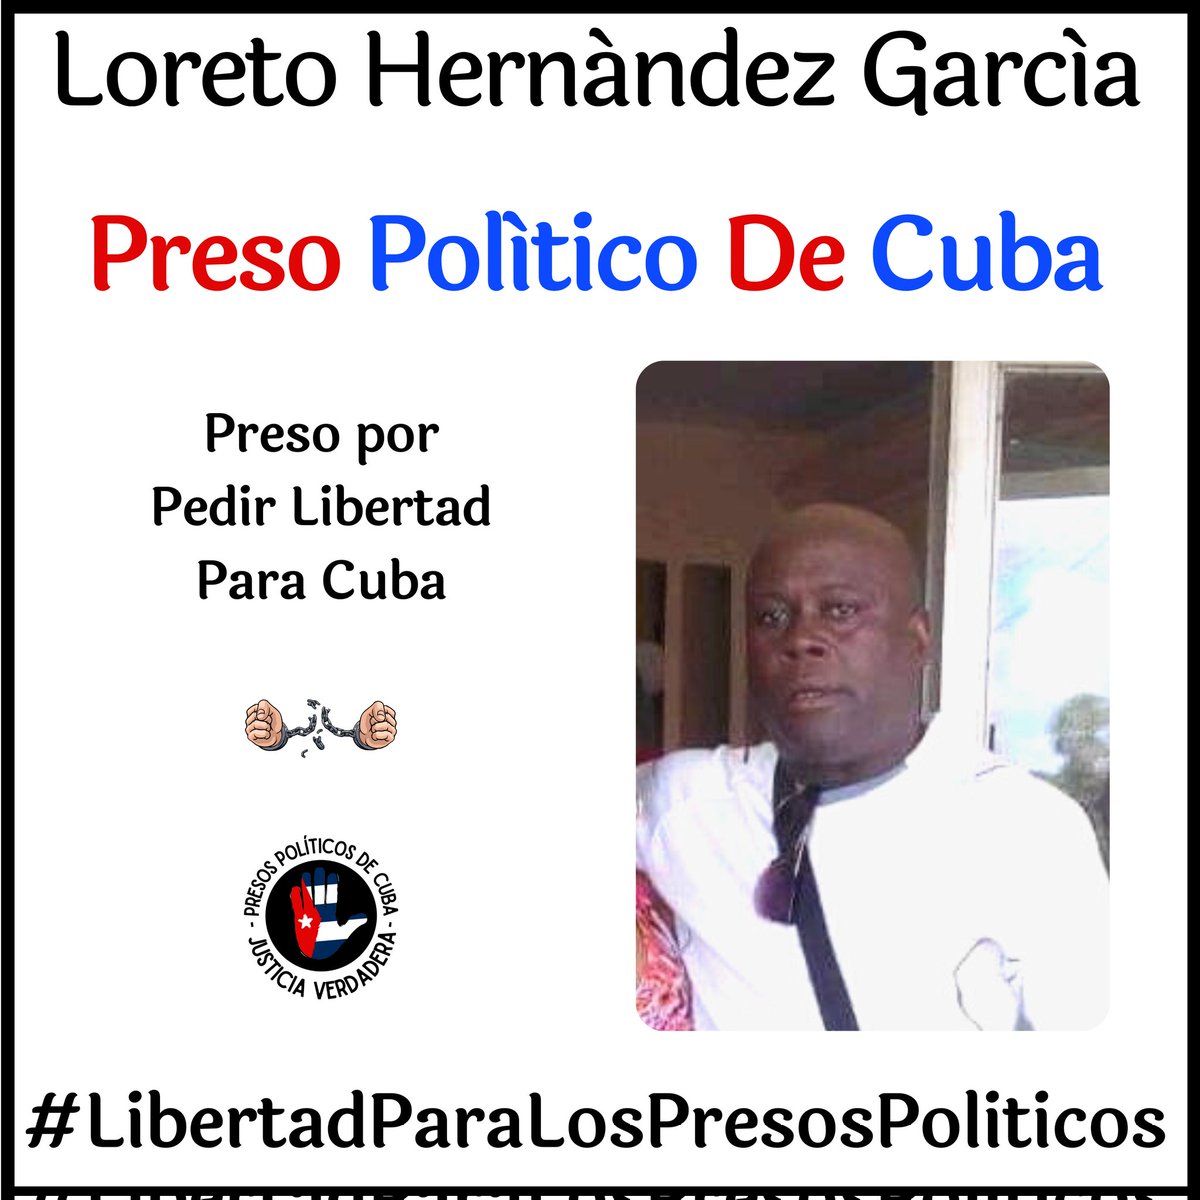 #Twittazo Libertad para Loreto Hernández García. 
.
“Sin aire, la tierra muere. Sin libertad, como sin aire propio y esencial, nada vive.” -José Martí-
.

.
.
#HastaQueSeanLibres 
#PresosPoliticosDeCuba
#LibertadYJusticiaParaCuba